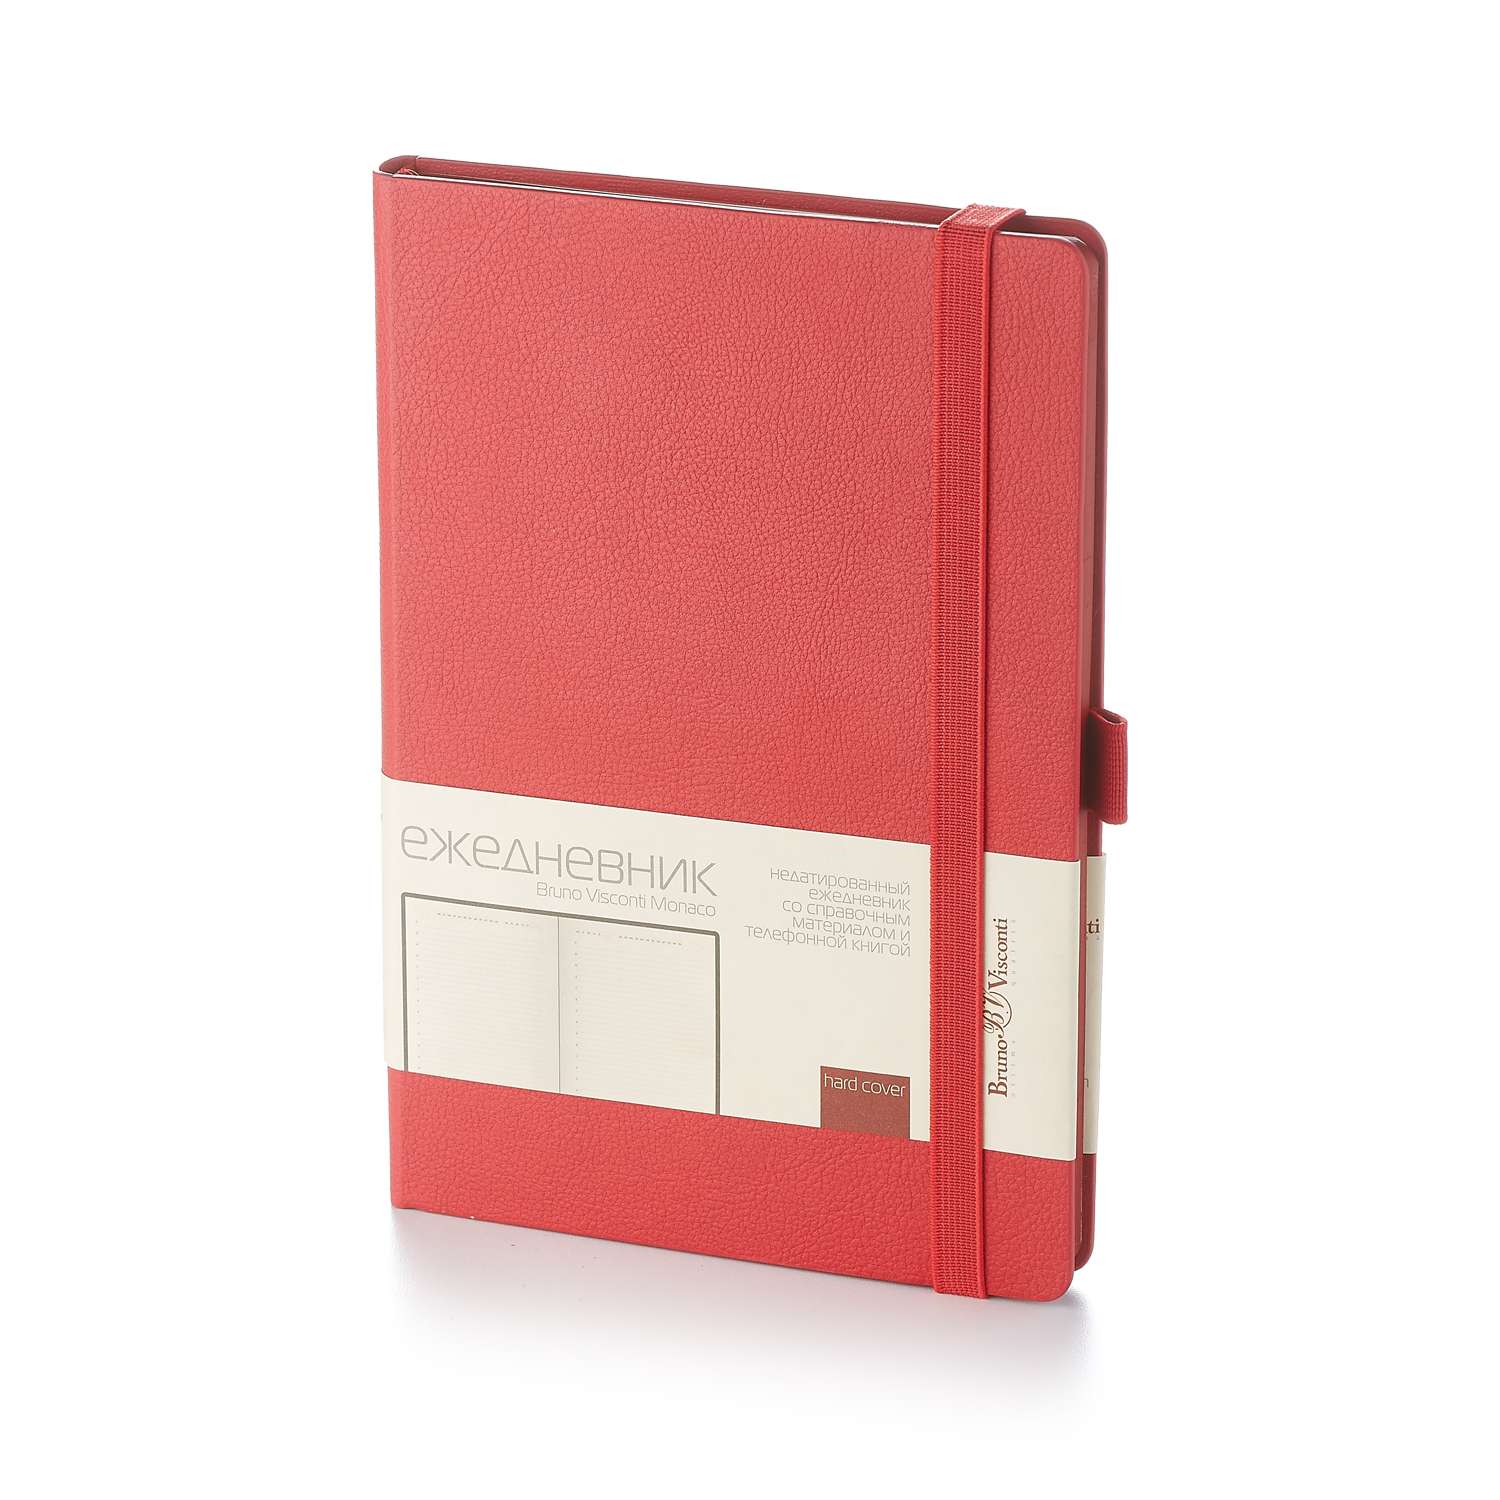 Набор подарочный Bruno Visconti Monaco красный А5 145х213 мм ежедневник и ручка - фото 2